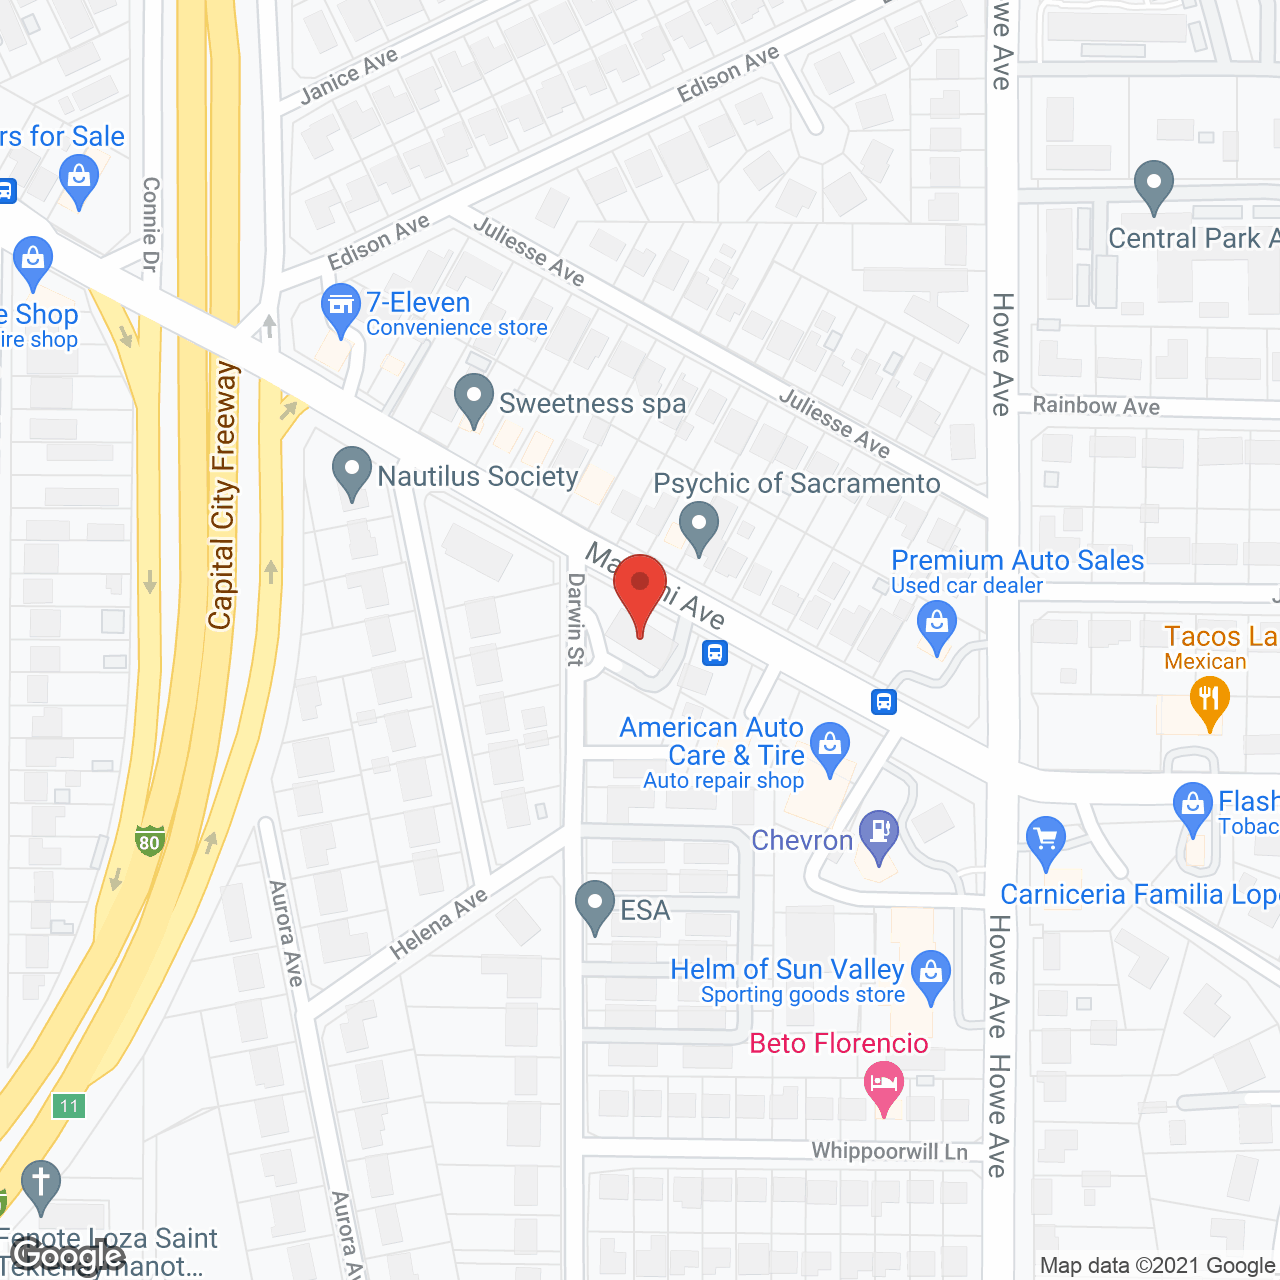 Marconi Villa in google map